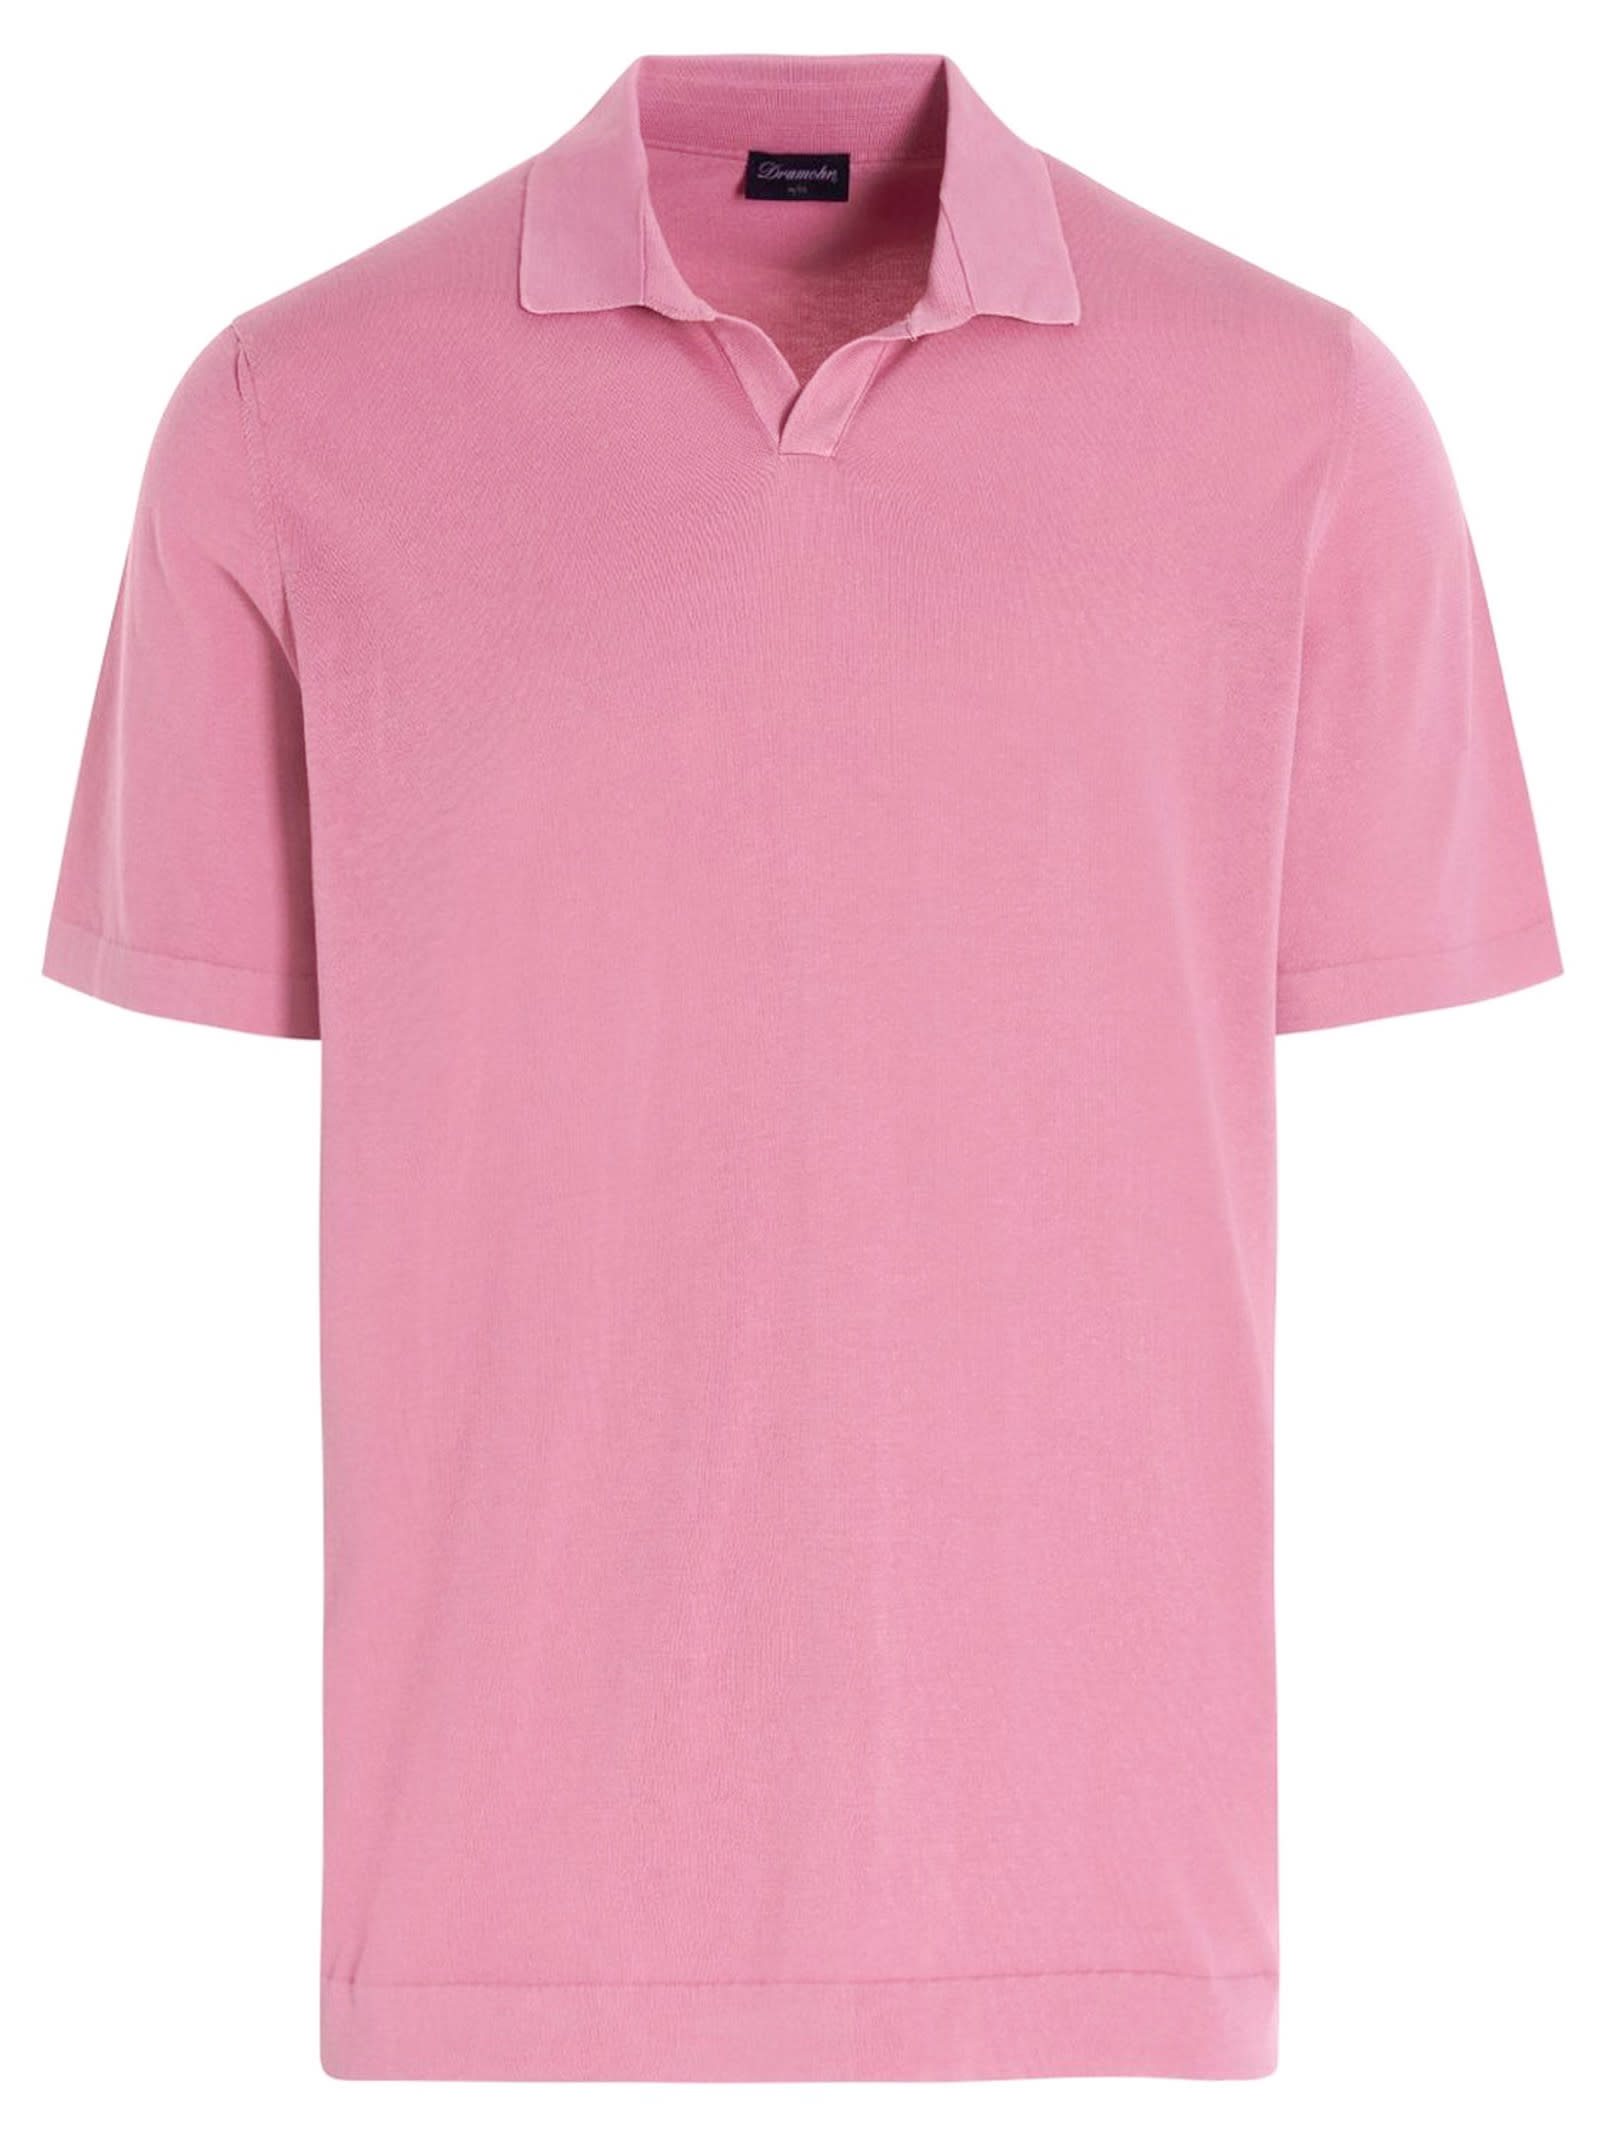 Drumohr Pink Cotton T-shirt